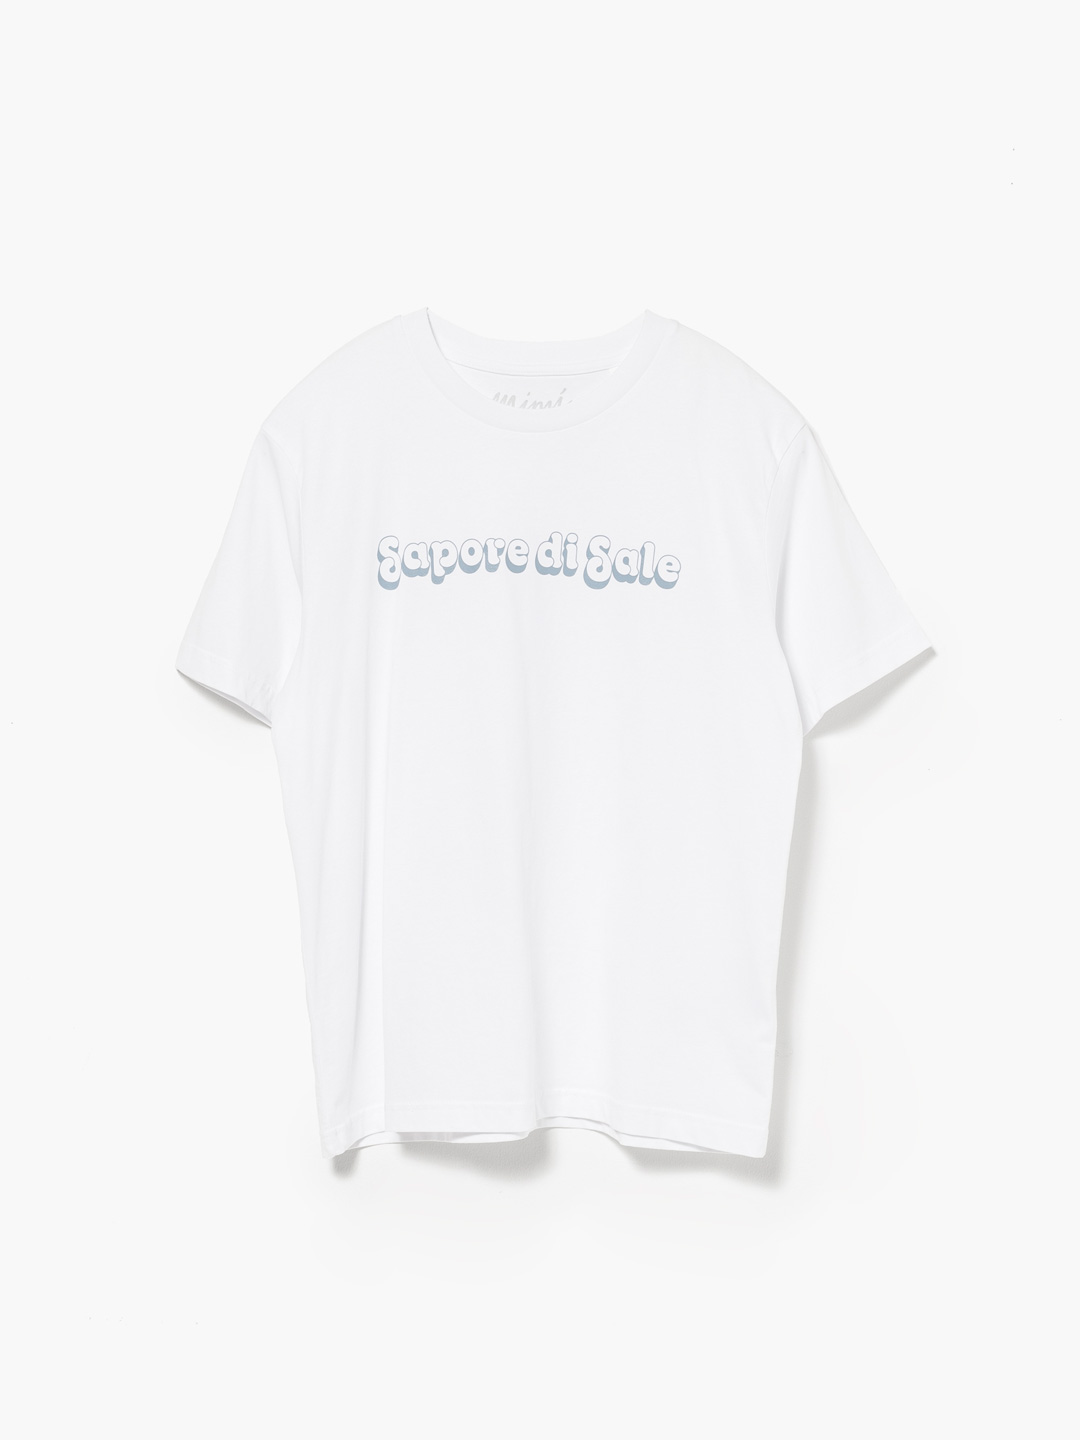 Sapore Di Sale T-Shirts - White